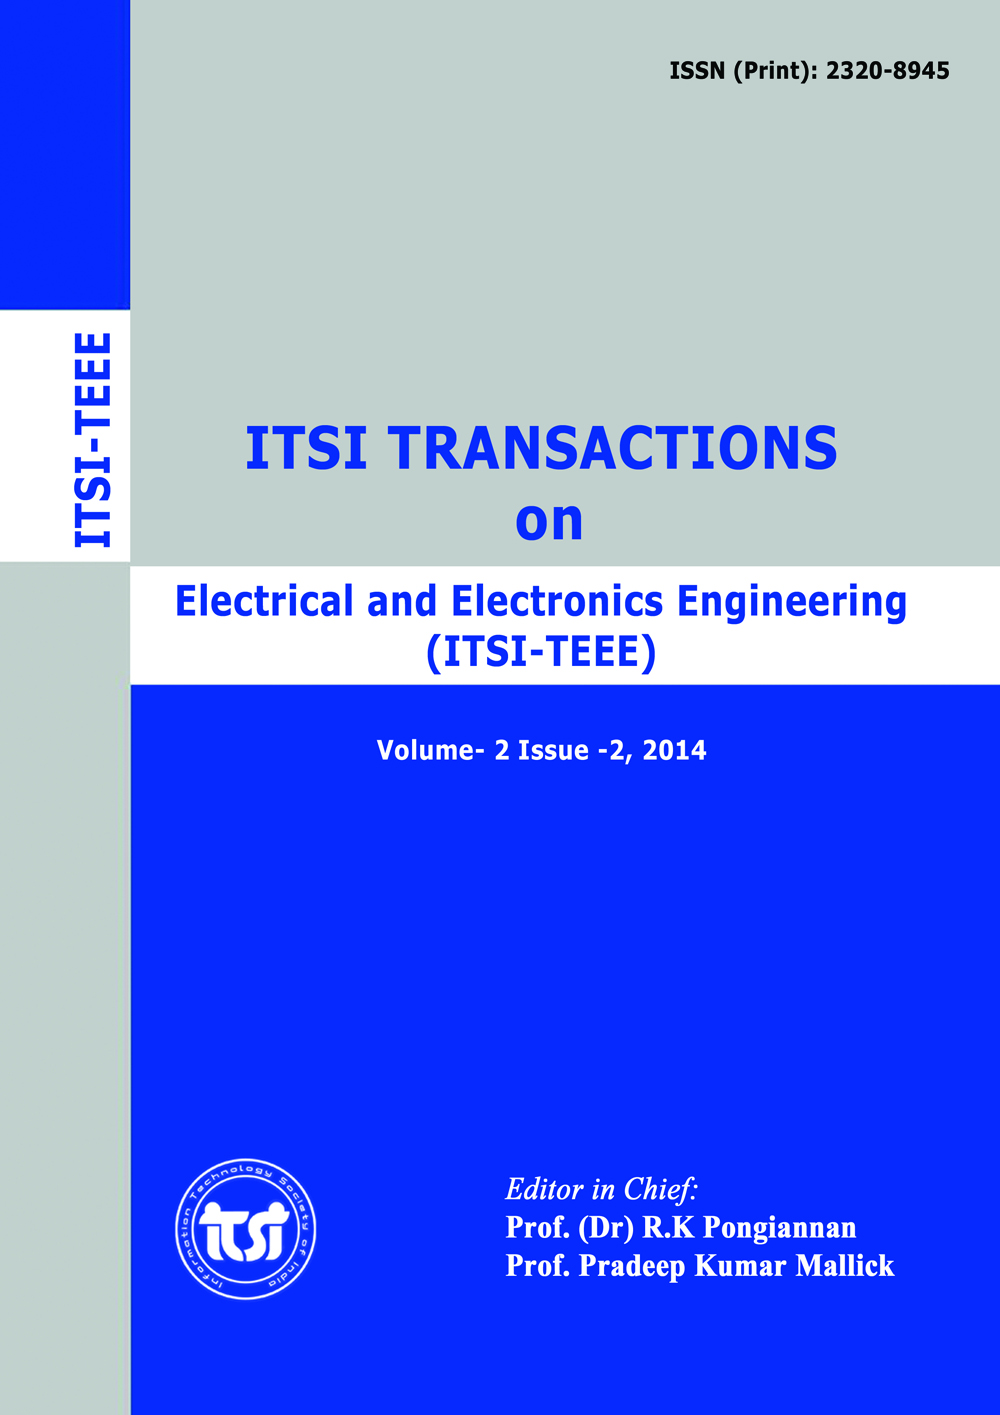 ITSI-TEEE Transaction